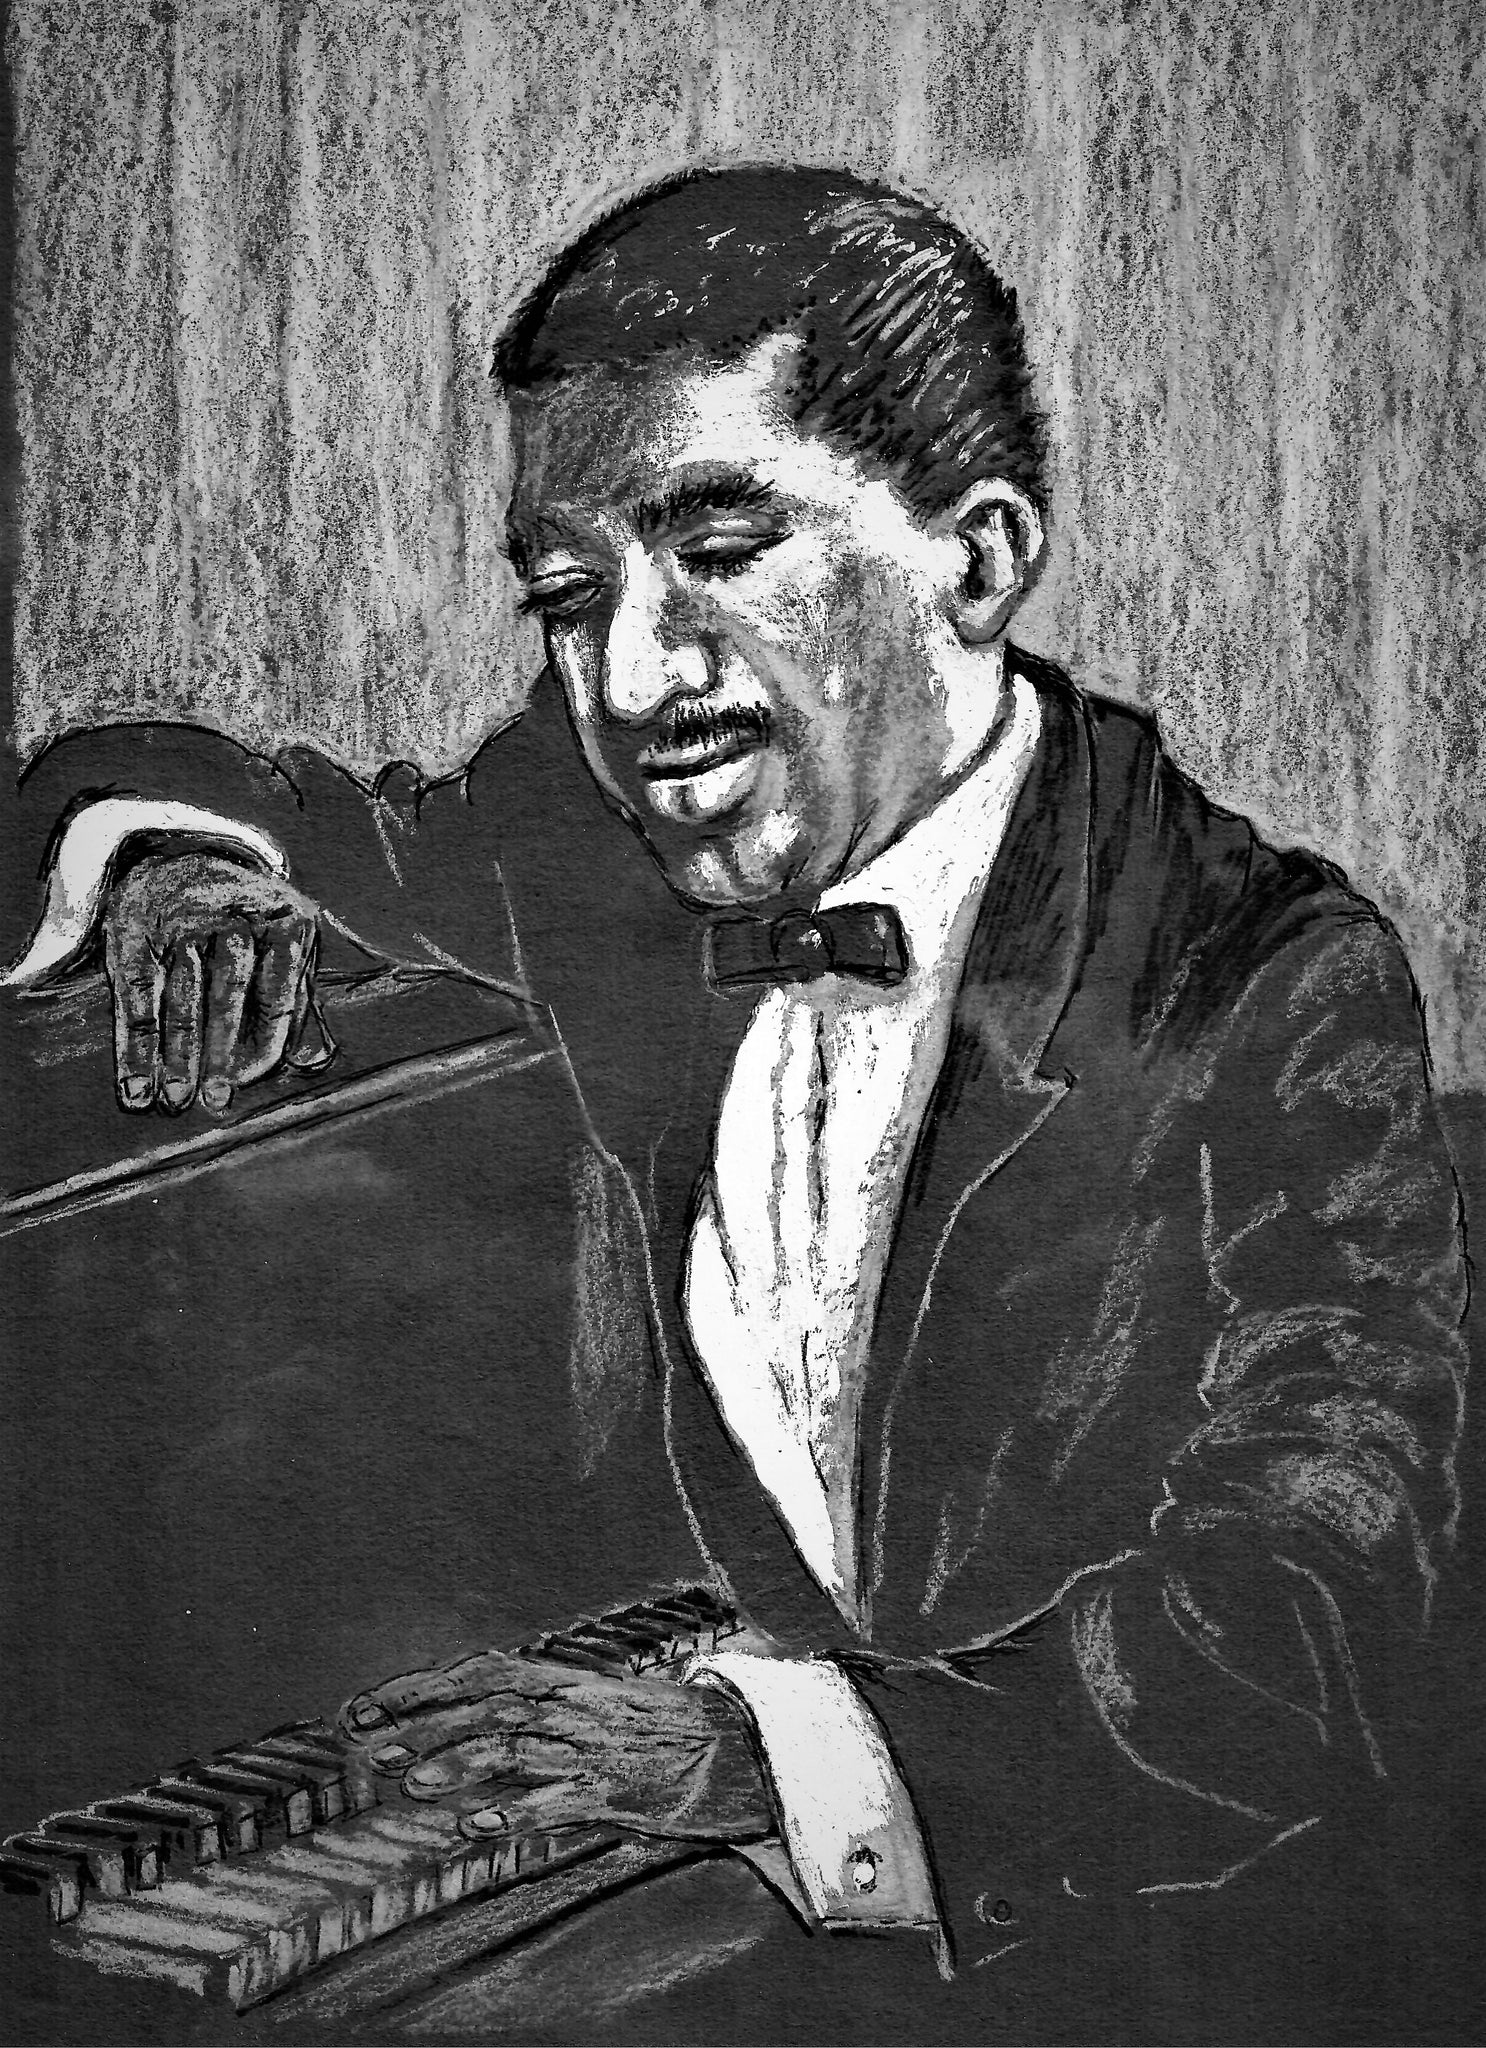 Musician - Jazz Pianist, New Orleans Jazz Artist